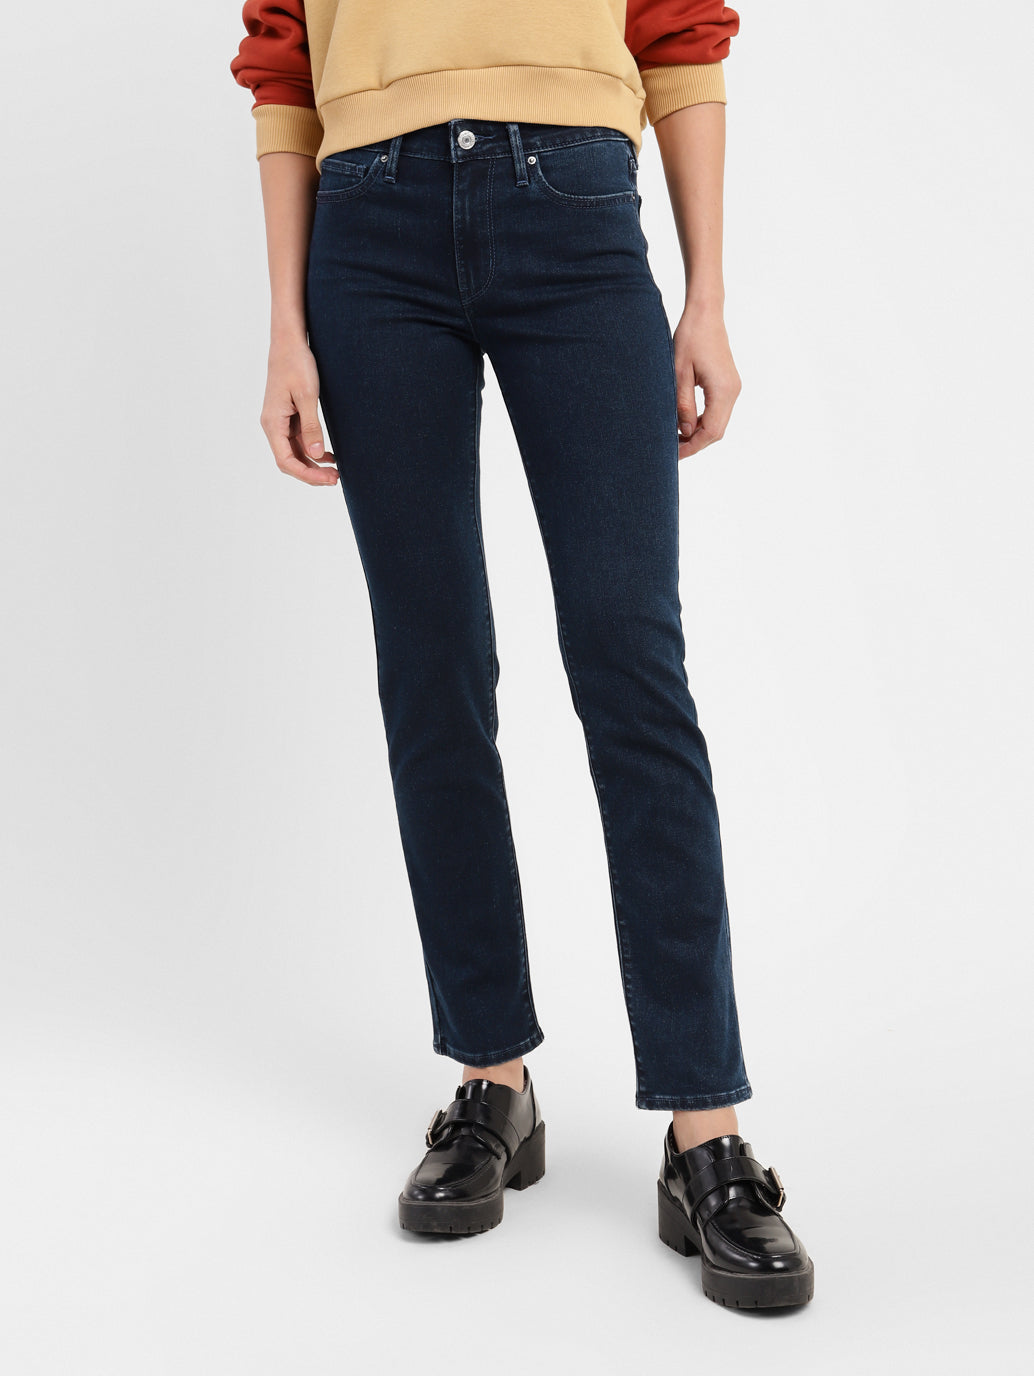 Women's 712 Slim Fit Jeans